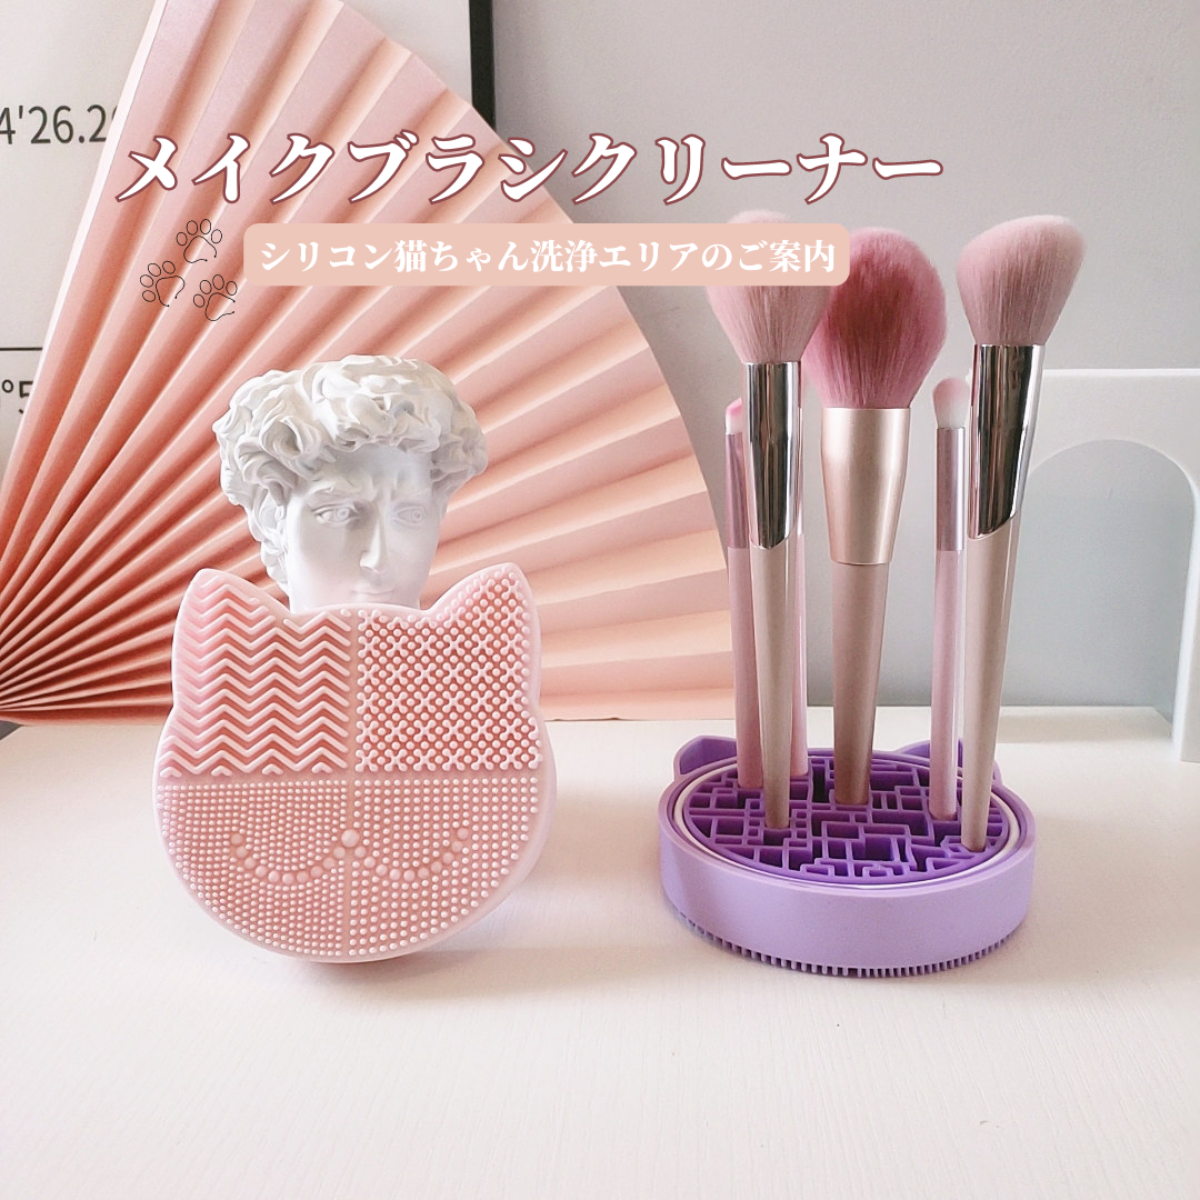 GOODCHI メイクブラシクリーナー 猫型 シリコンマット オシャレ ブラシ洗浄 メイク小物 化粧ブラシ 化粧筆 ブラッシュブラシ 置き台 ピンク